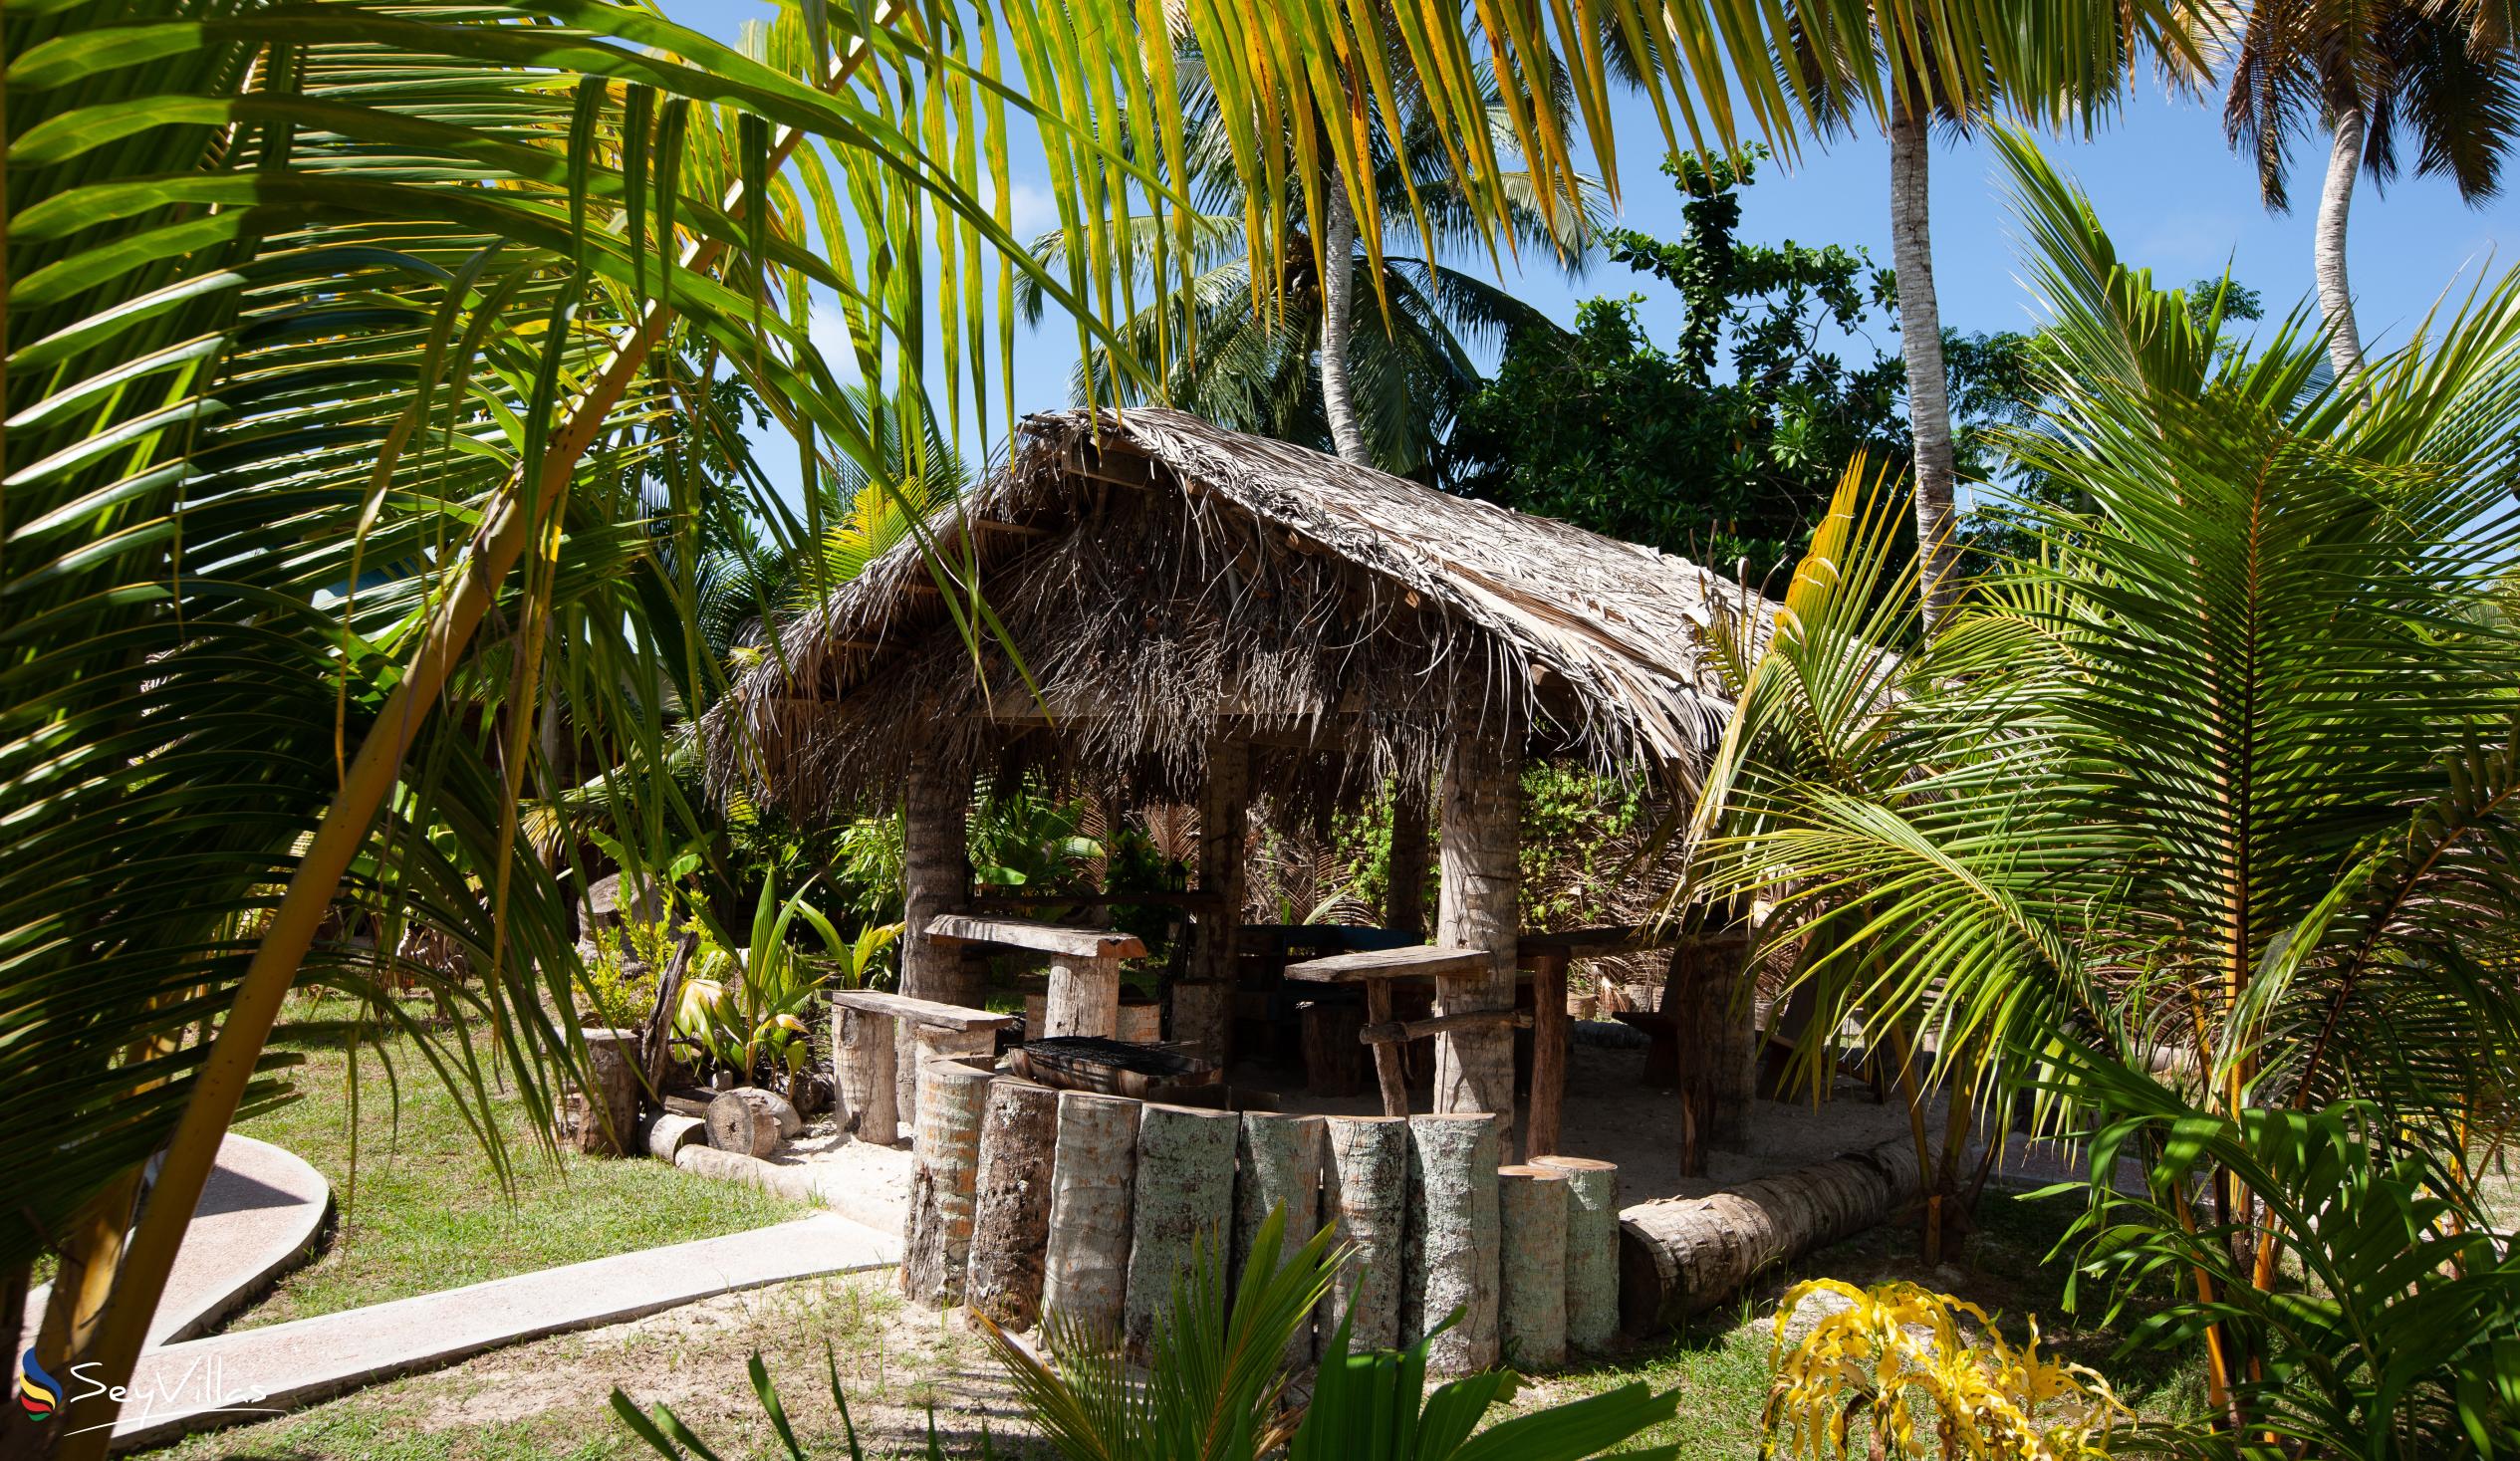 Photo 11: Coco de Mahi - Outdoor area - La Digue (Seychelles)